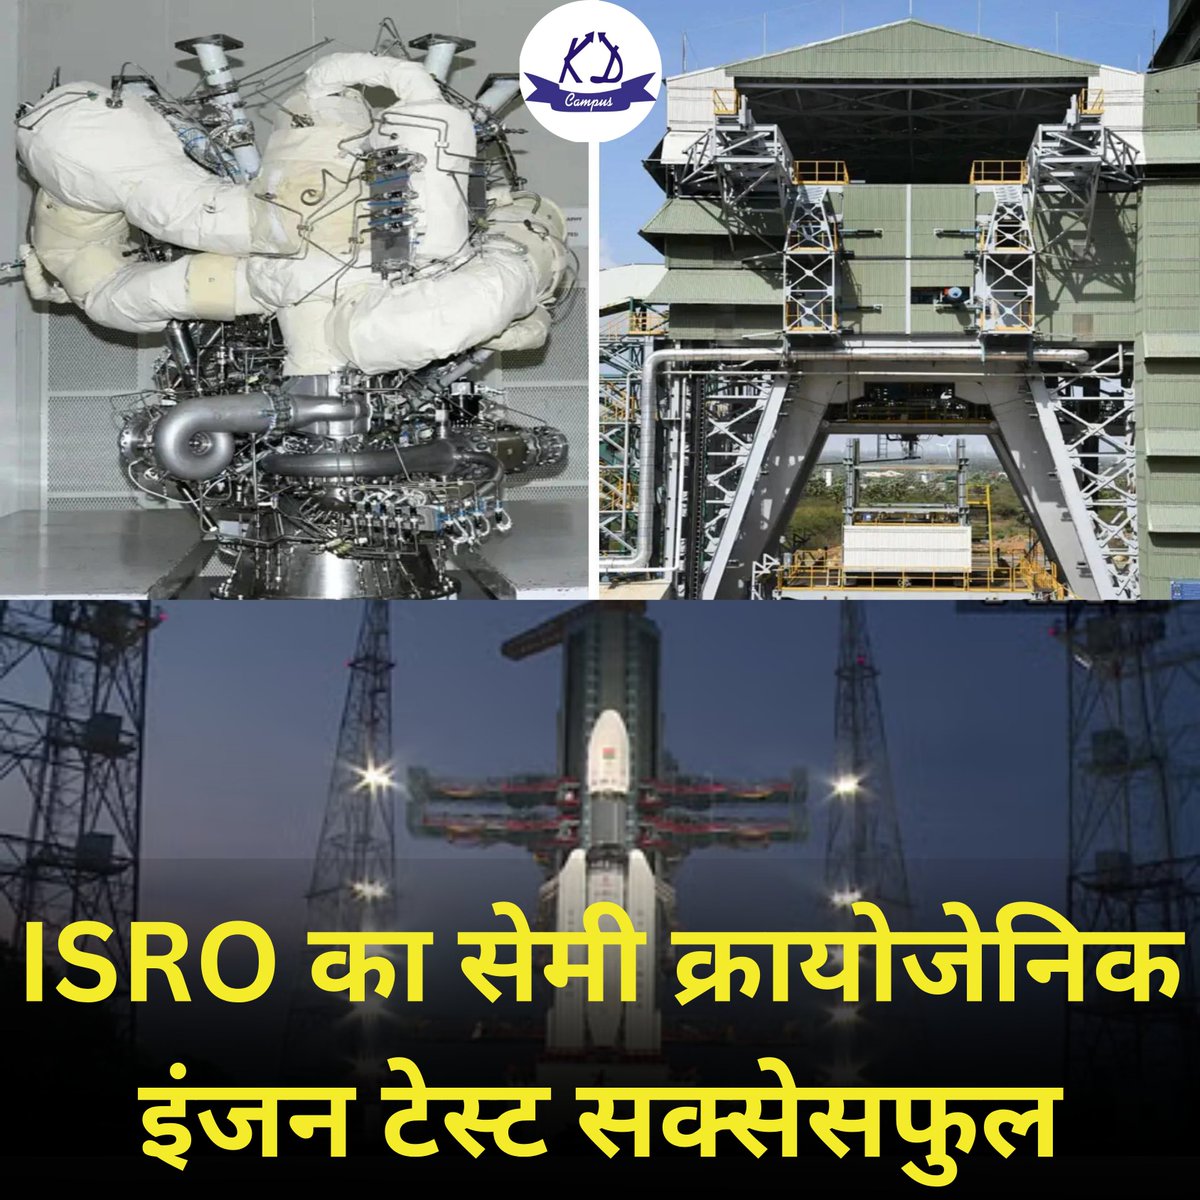 नेशनल (NATIONAL)

ISRO का सेमी क्रायोजेनिक इंजन टेस्ट सक्सेसफुल: 6 मई को इंडियन स्पेस रिसर्च ऑर्गेनाइजेशन (ISRO) ने बताया कि सेमी क्रायोजेनिक इंजन के डेवलपमेंट में एक और टेस्ट पास कर लिया है। 

#isro #cryogenicengine #successfultest #SpaceResearch